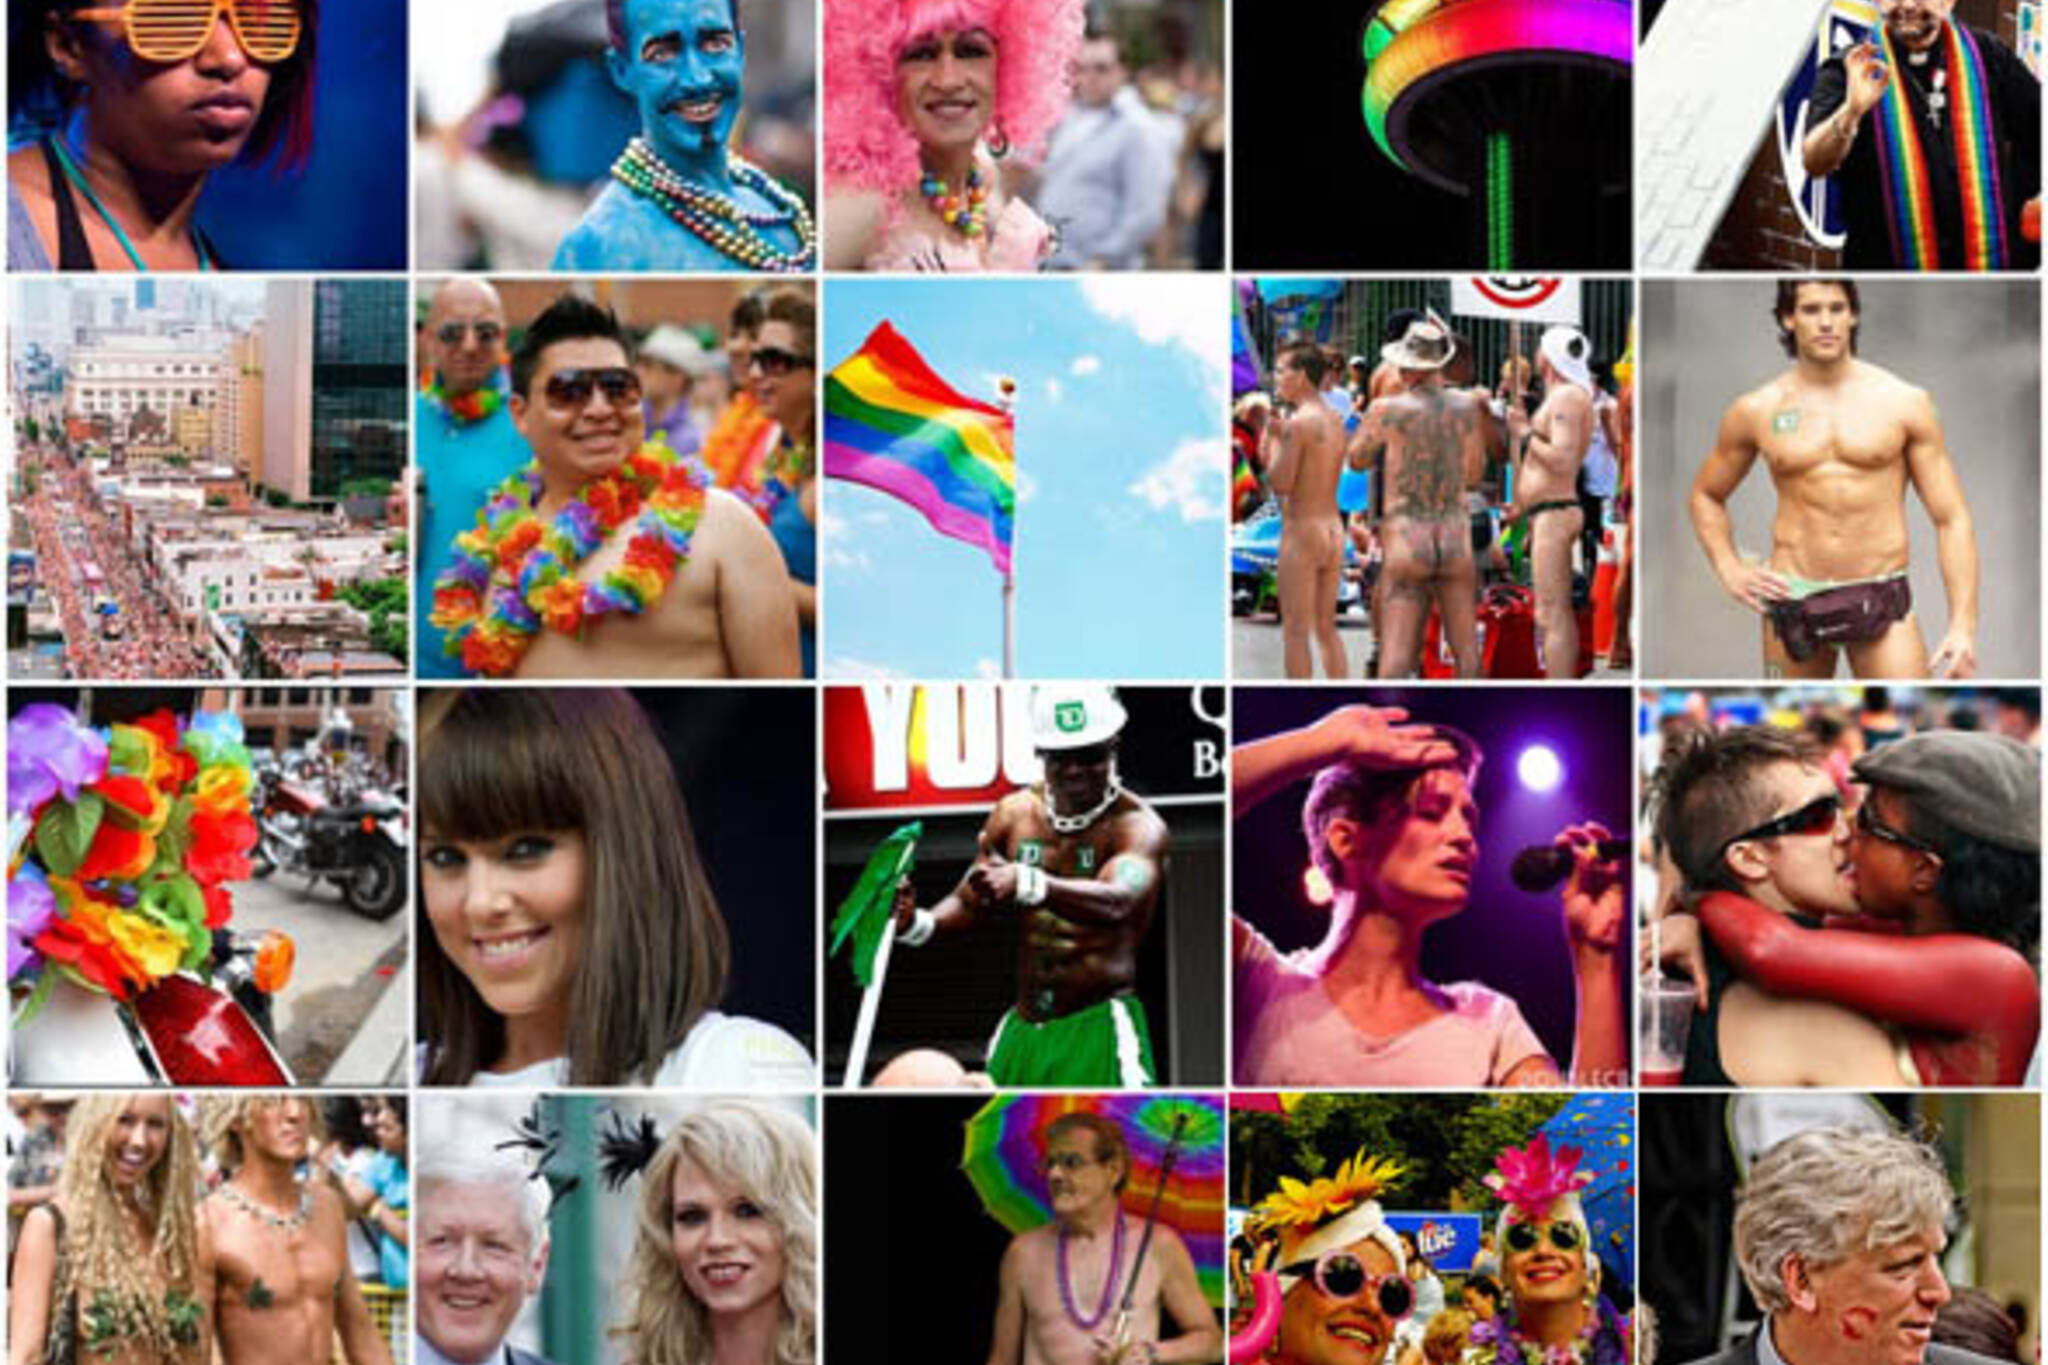 Flickr Forum: July 4th, 2008 - Pride